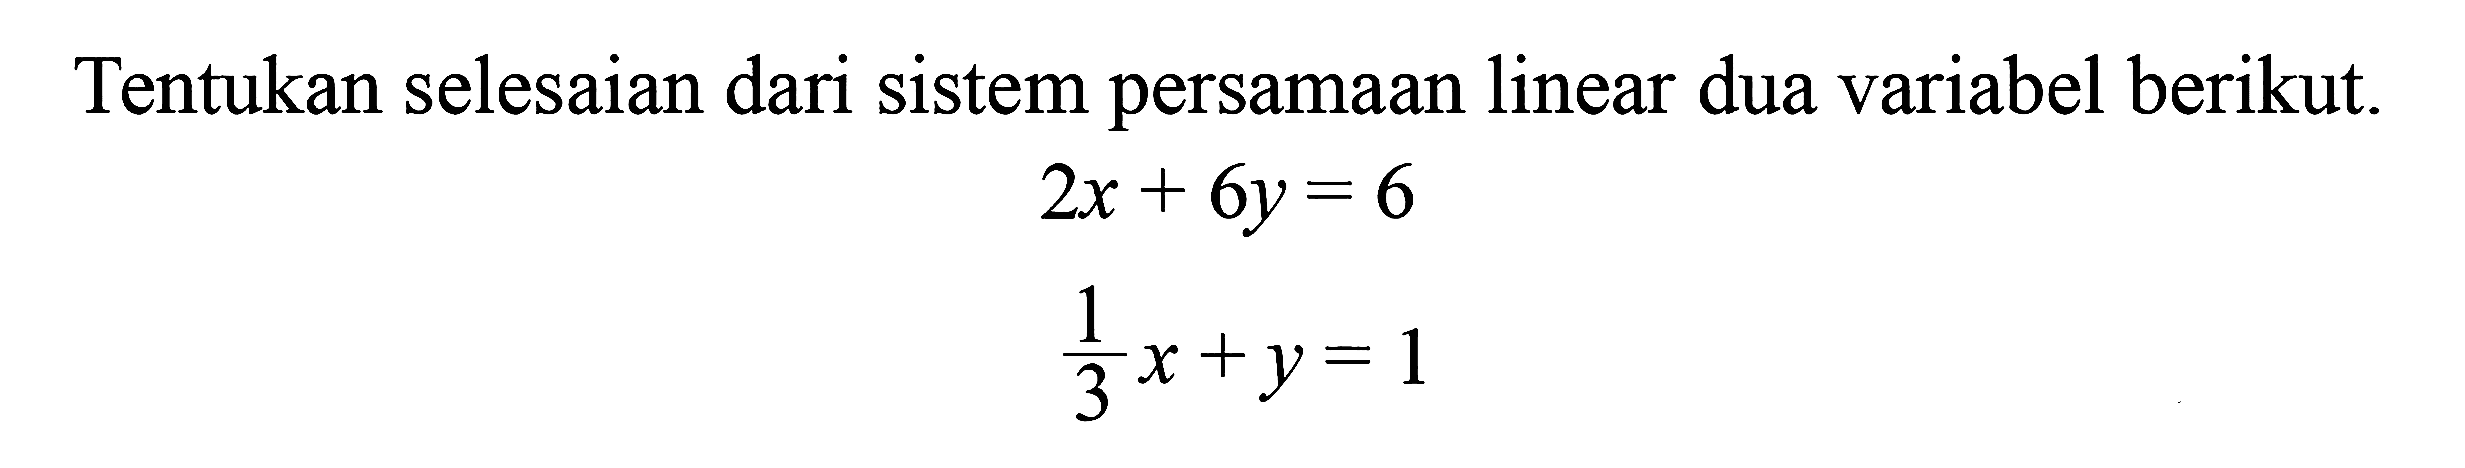 Tentukan selesaian dari sistem persamaan linear dua variabel berikut. 2x + 6y = 6 1/3x + y = 1